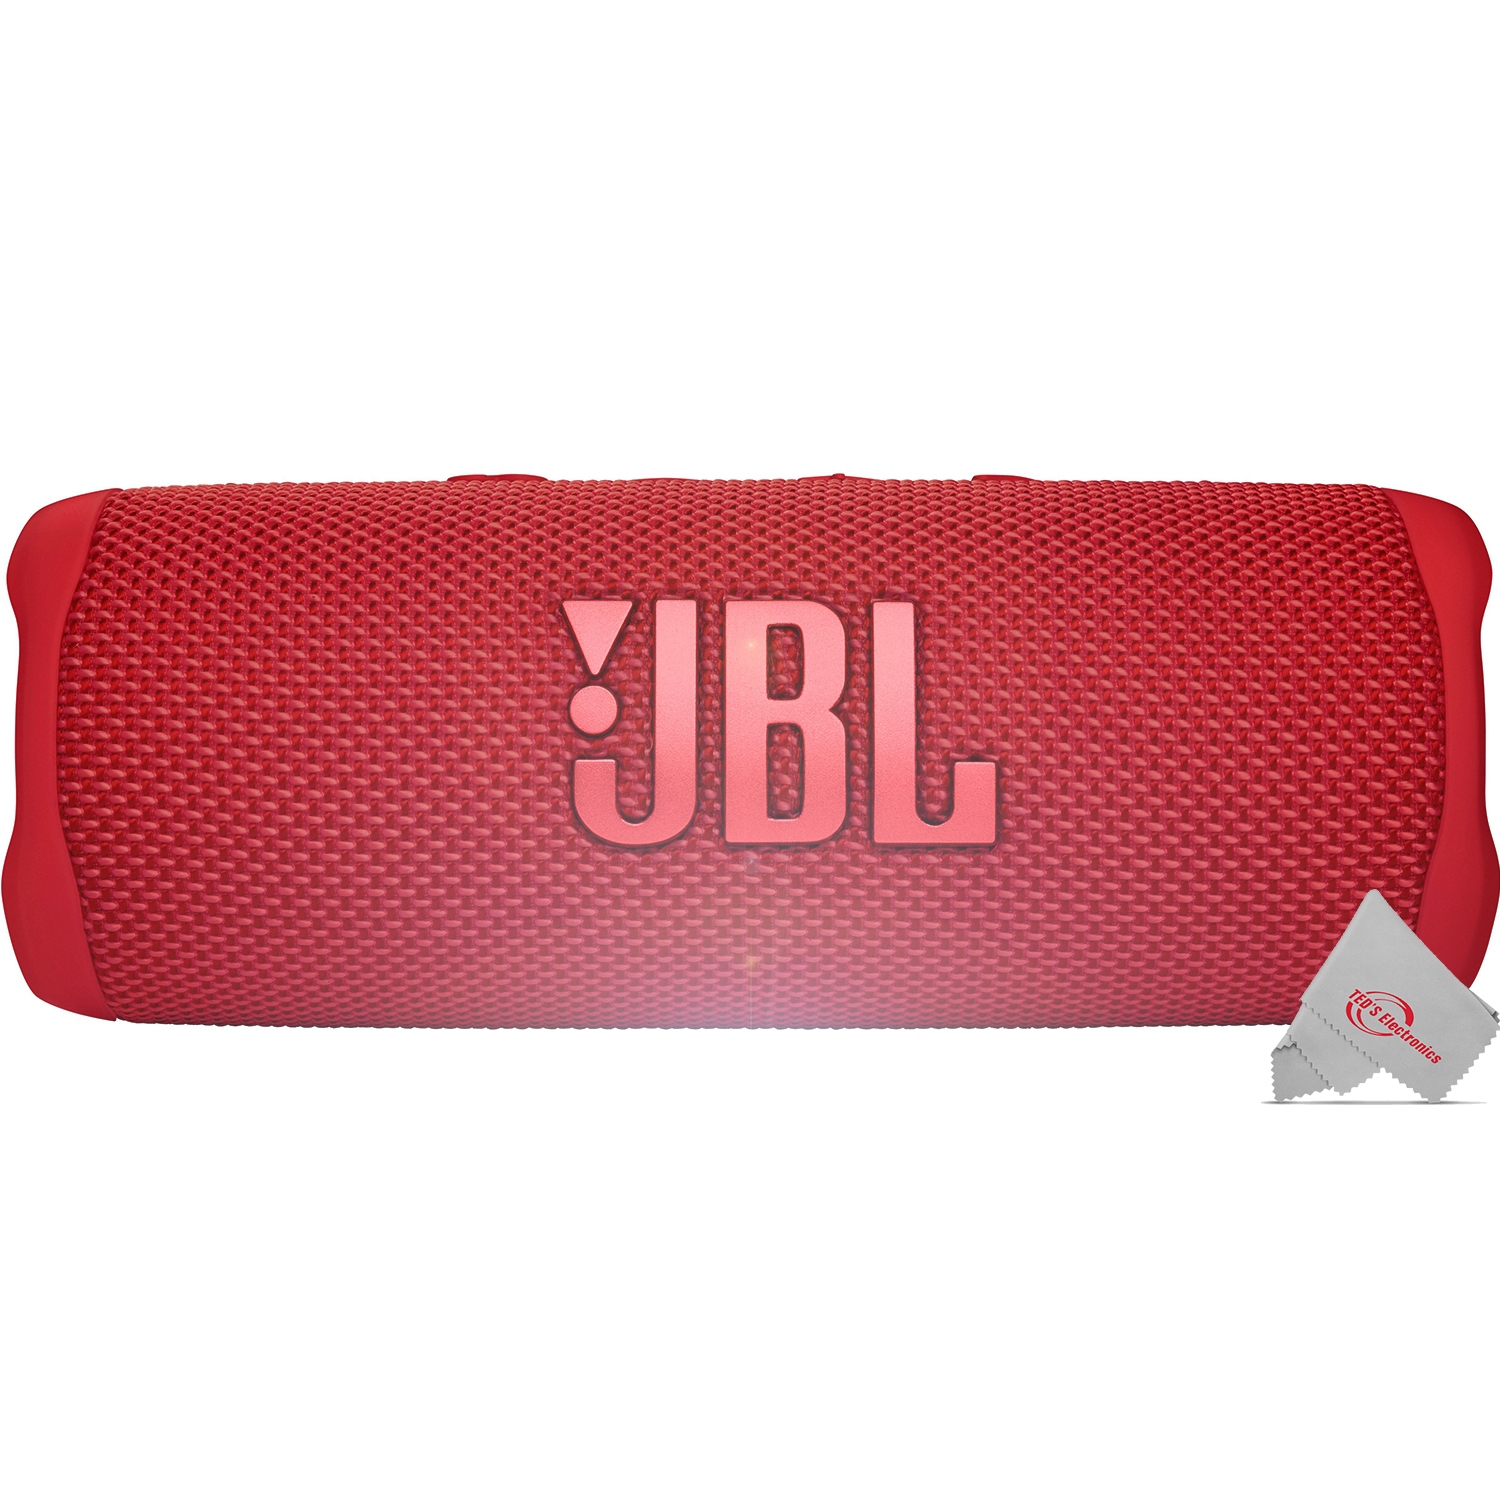 JBL FLIP 6 Wireless Portable Waterproof Speaker - Red / International Model